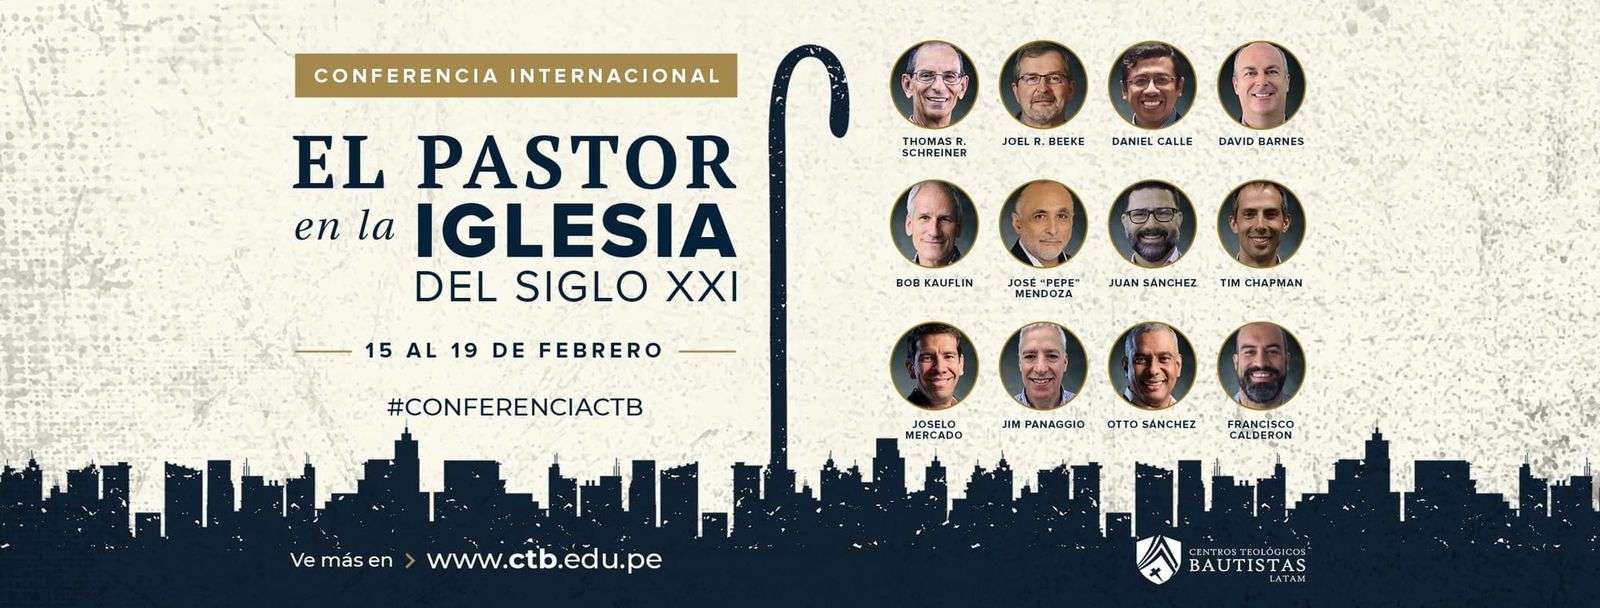 Los "Pastores del Siglo XXI" una conferencia ideal que no debes perderte